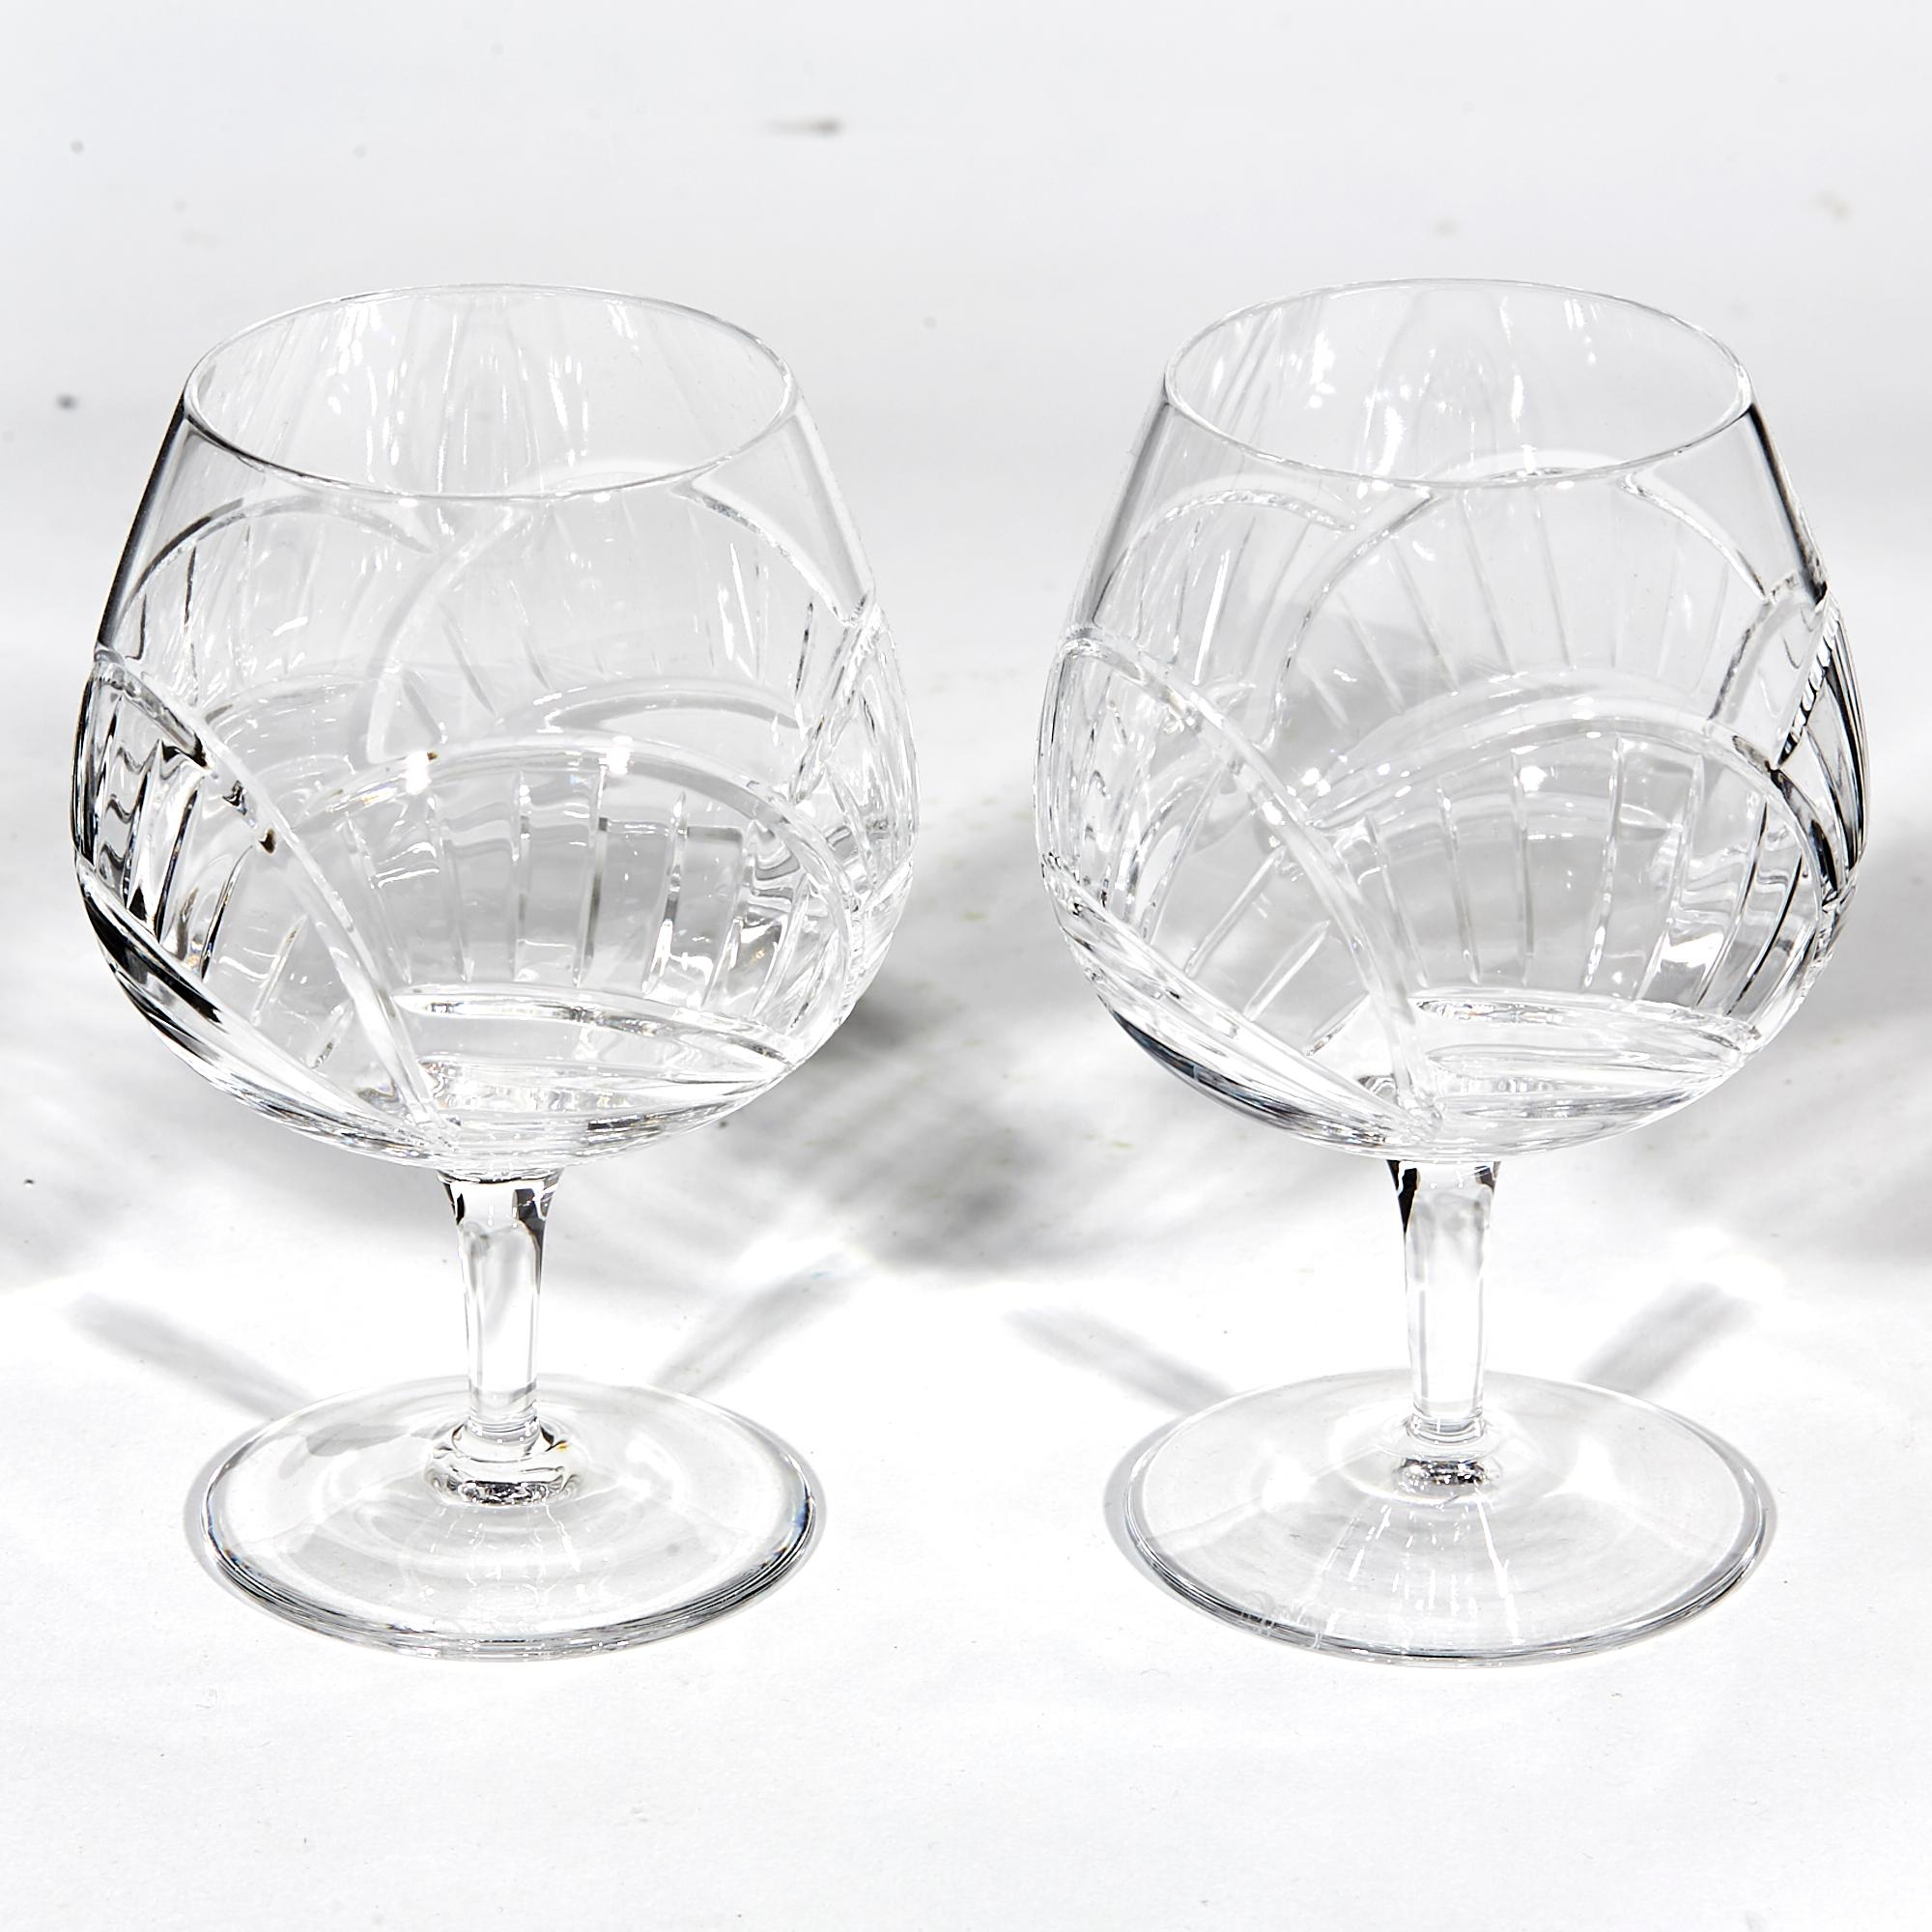 Pair of brandy snifters by Rogaska Crystal in their 